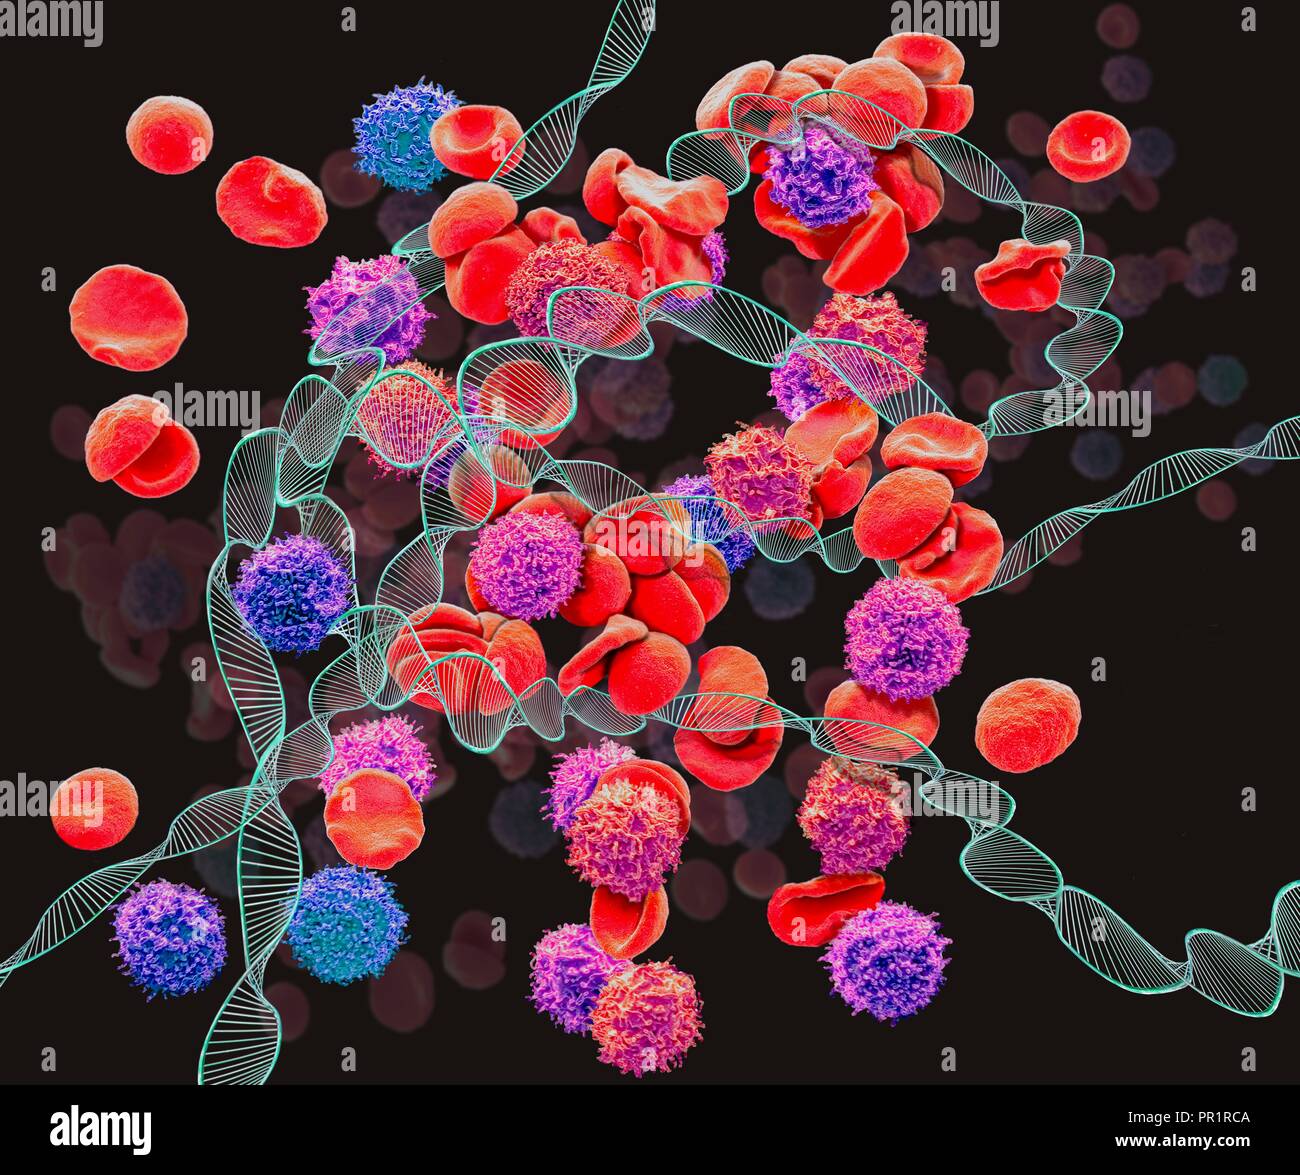 La leucemia, concettuale immagine composita. Microscopia elettronica a  scansione (SEM) e computer immagine generata (CGI) del DNA (acido  desossiribonucleico) molecole (eliche) e globuli rossi e bianchi. La  leucemia è il cancro delle